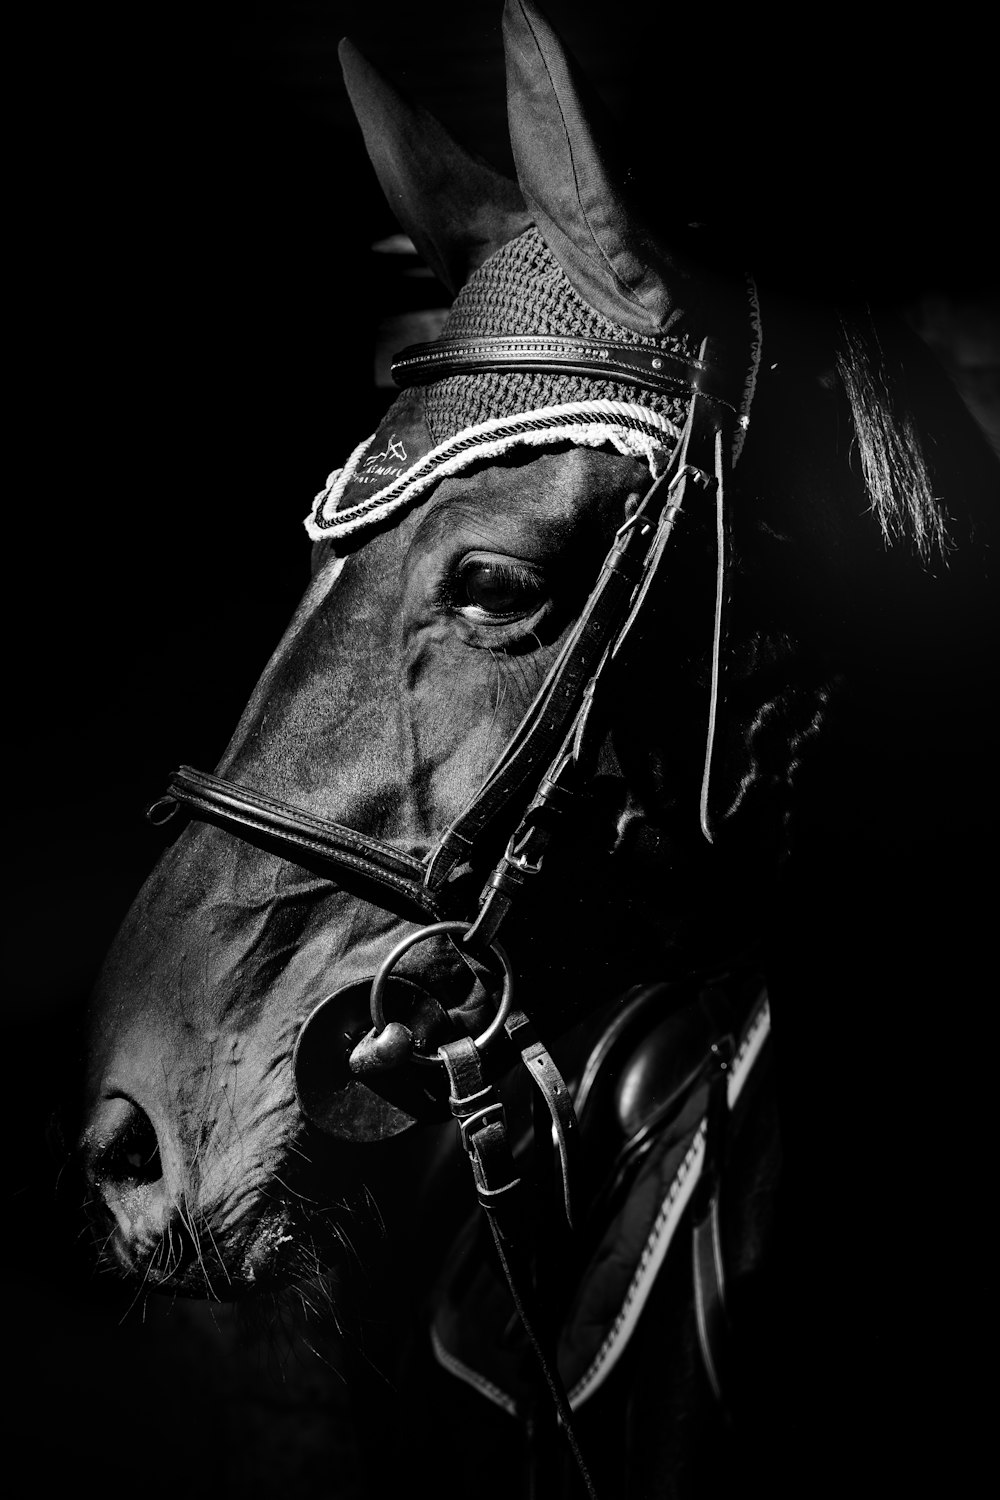 Una foto en blanco y negro de un caballo